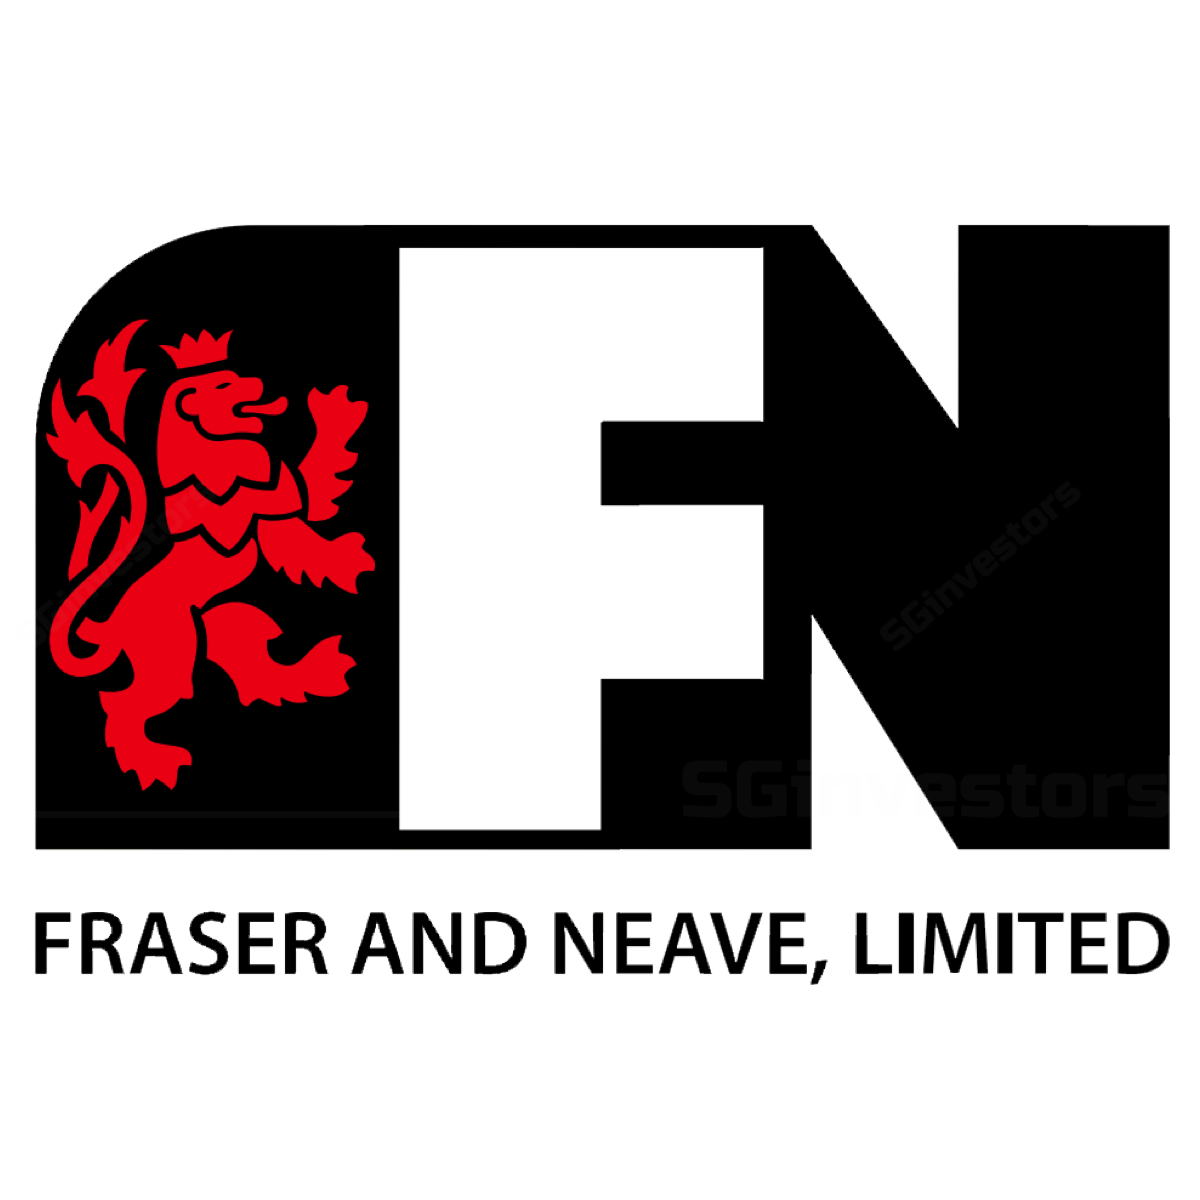 F&N logo